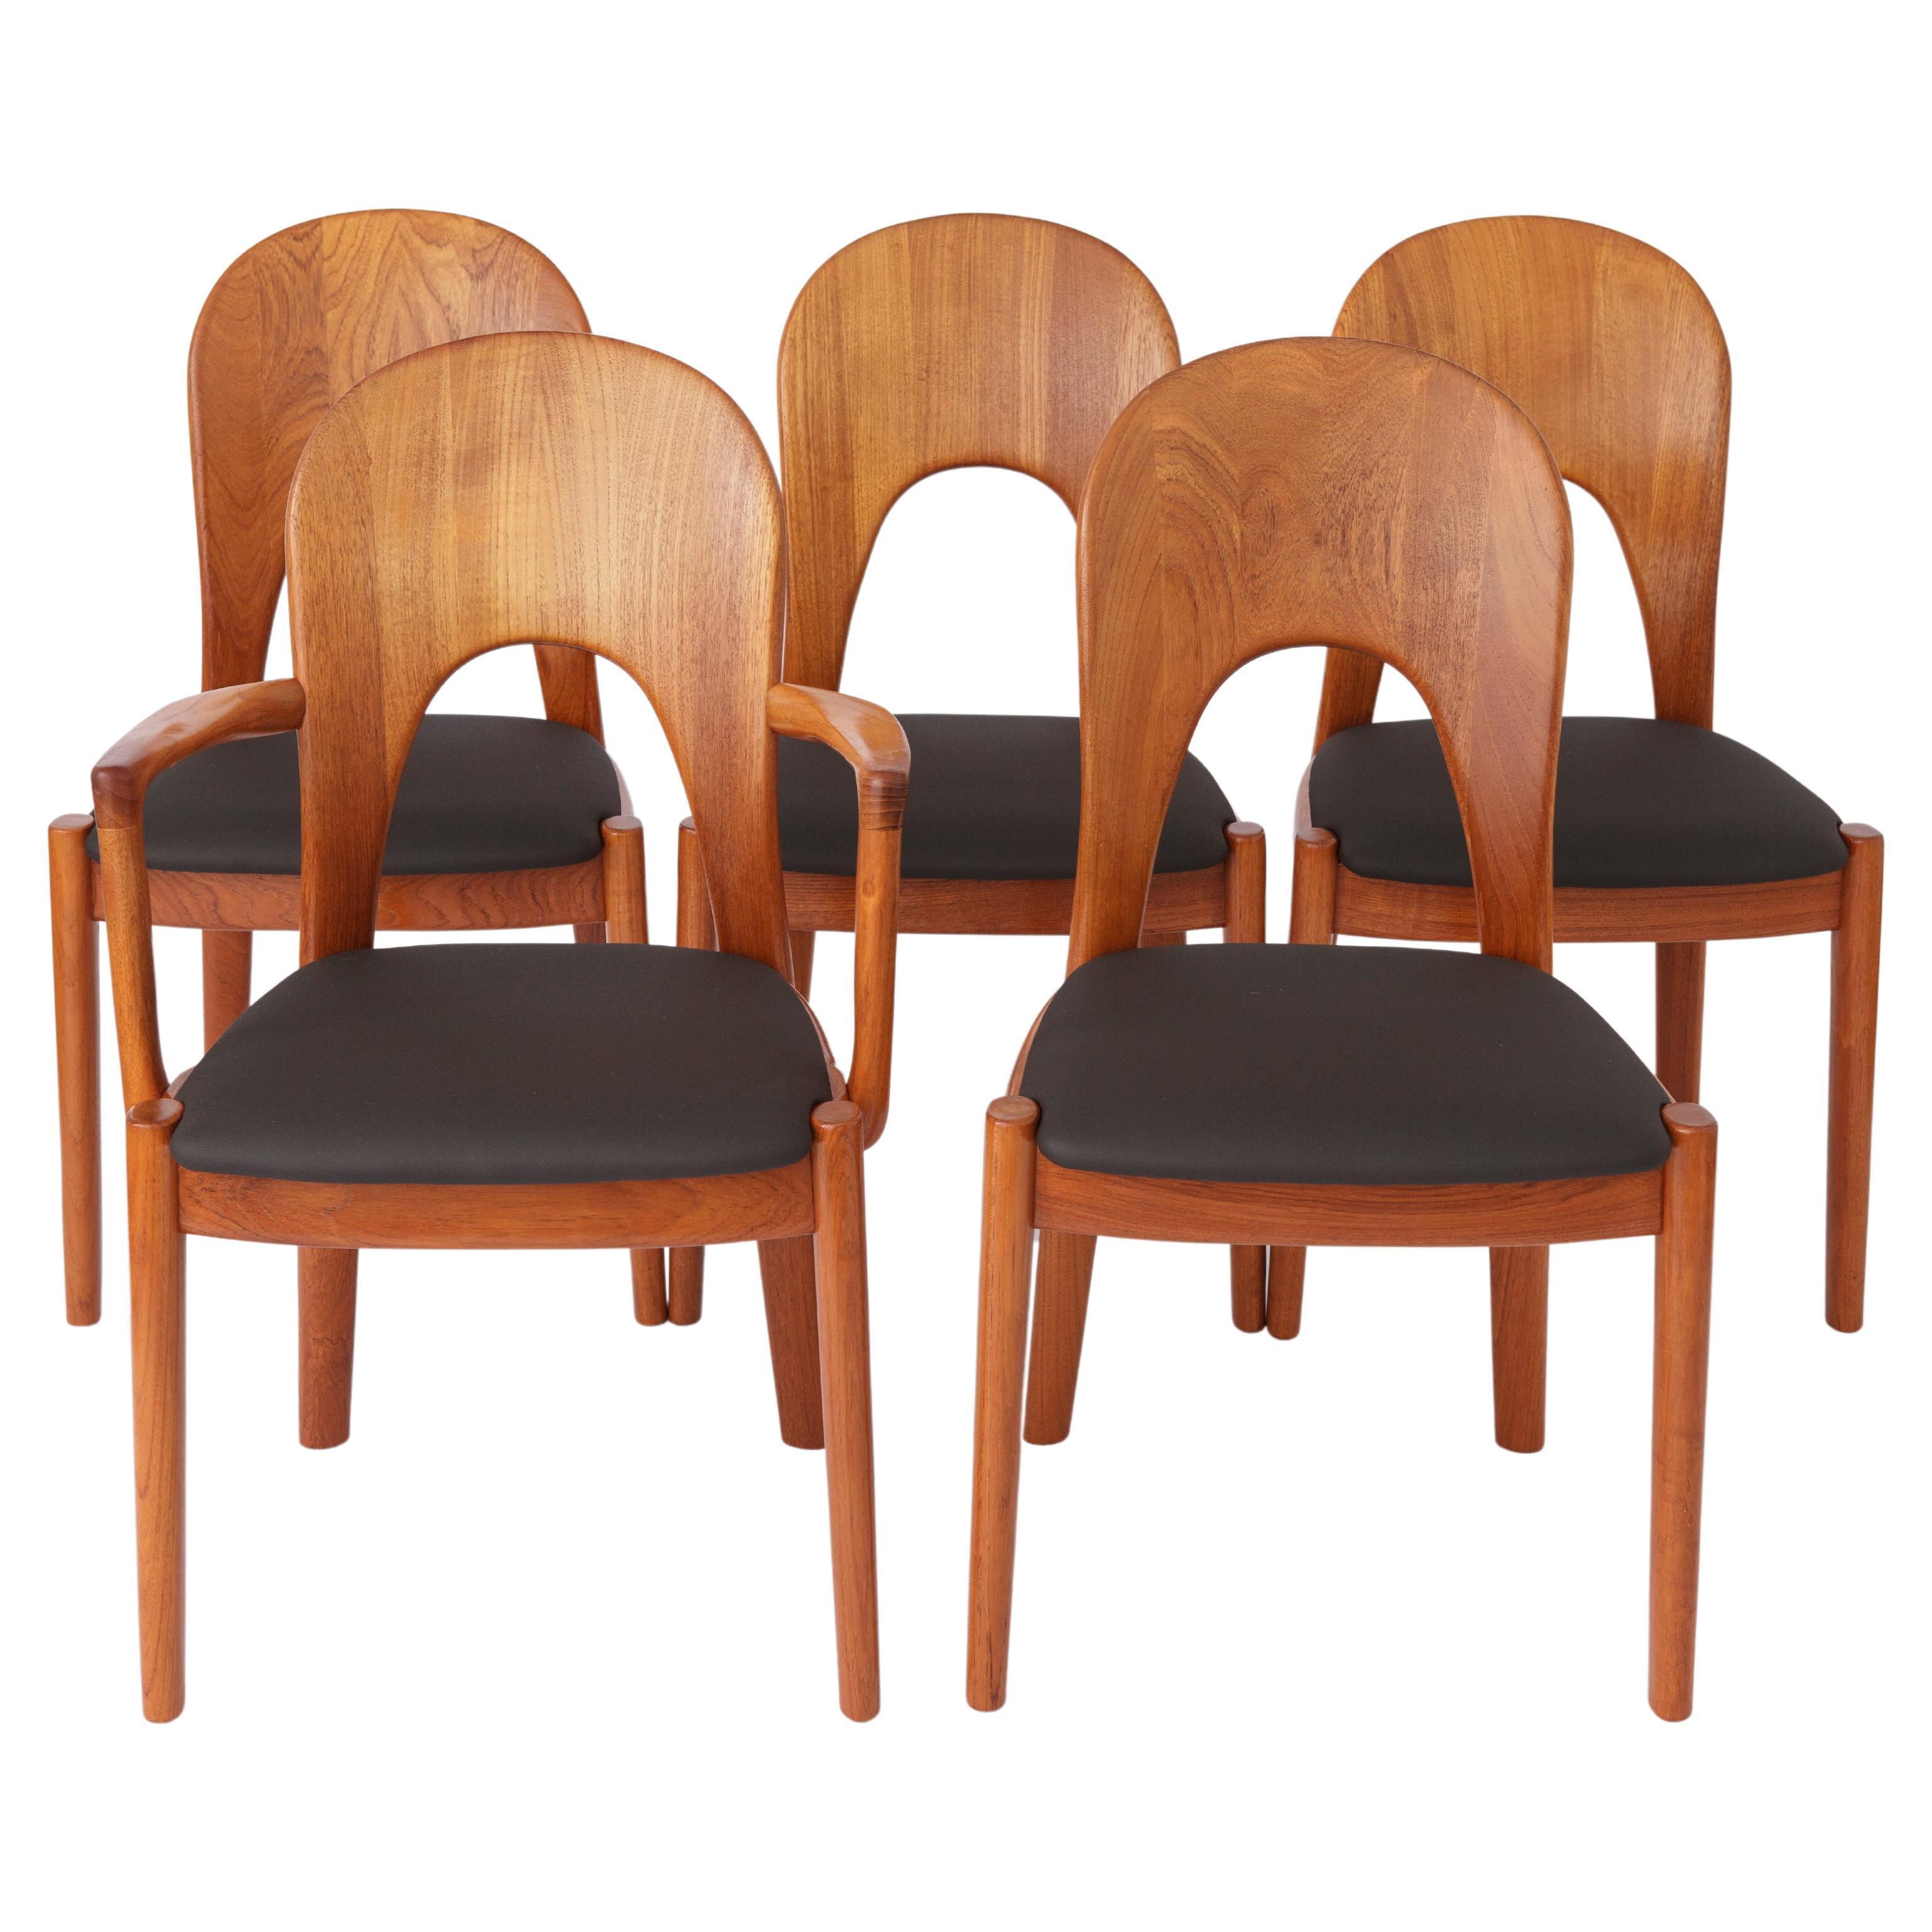 5 Vintage Chairs by Niels Koefoed 1960s Danish Teak For Sale